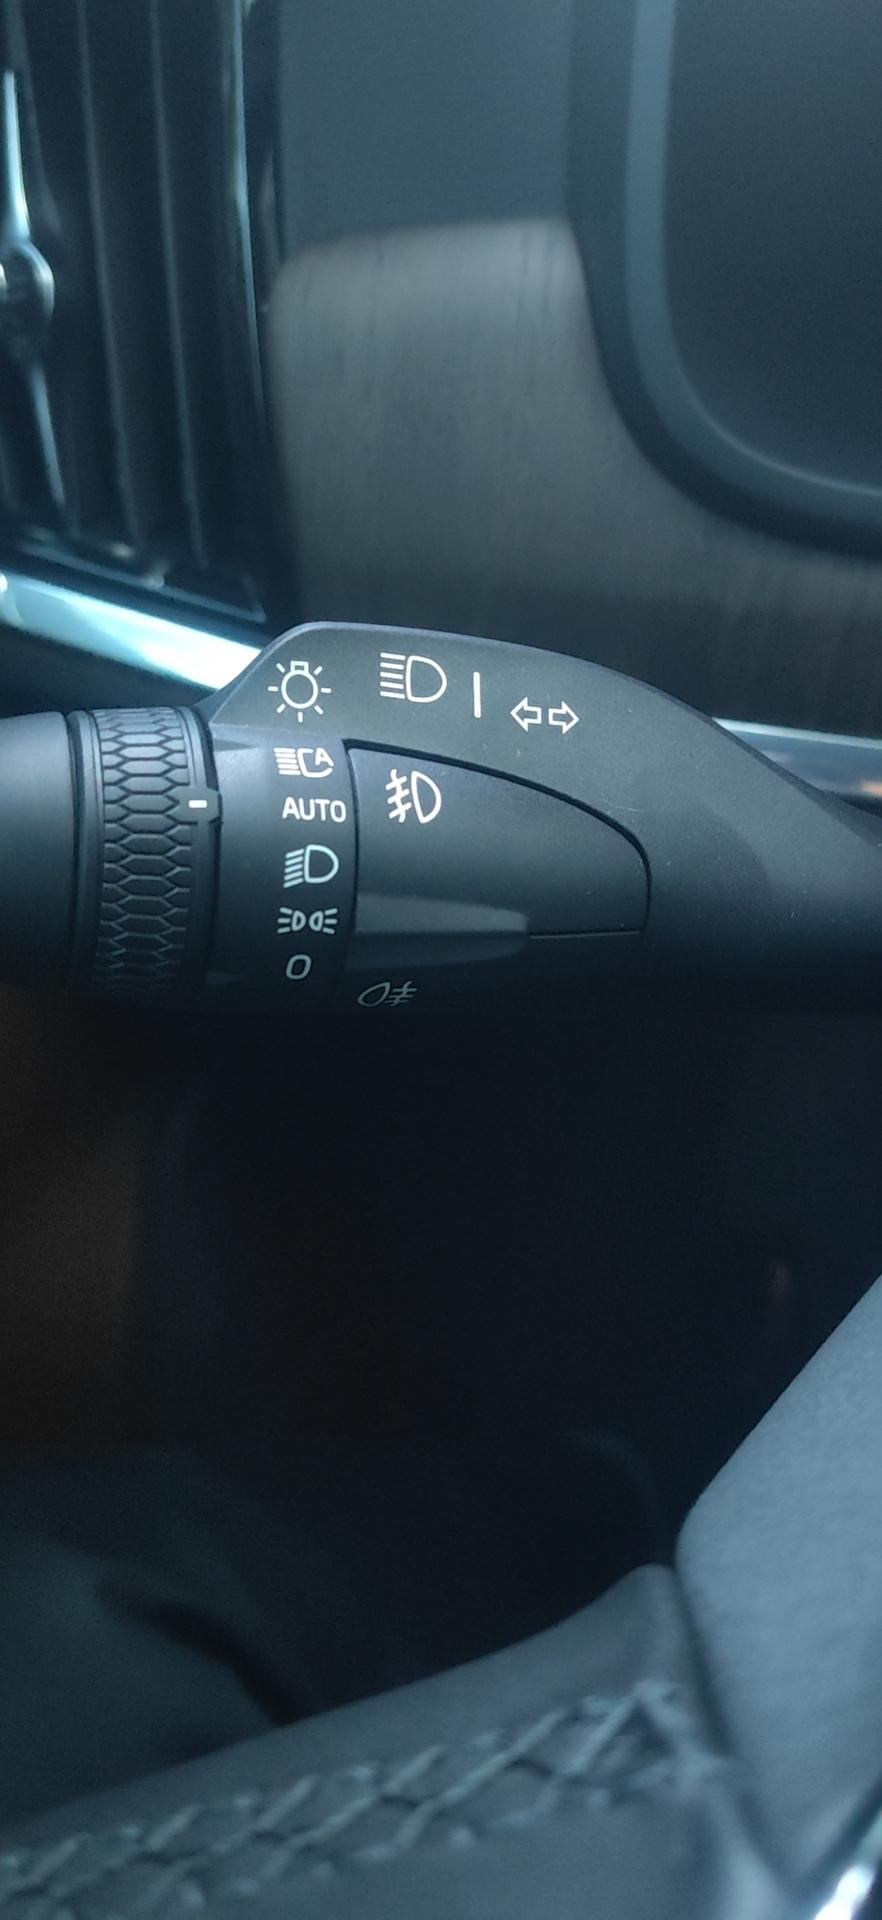 沃尔沃S90 铁子，s90白天自动大灯开到auto位置，后示廓灯也亮的吗